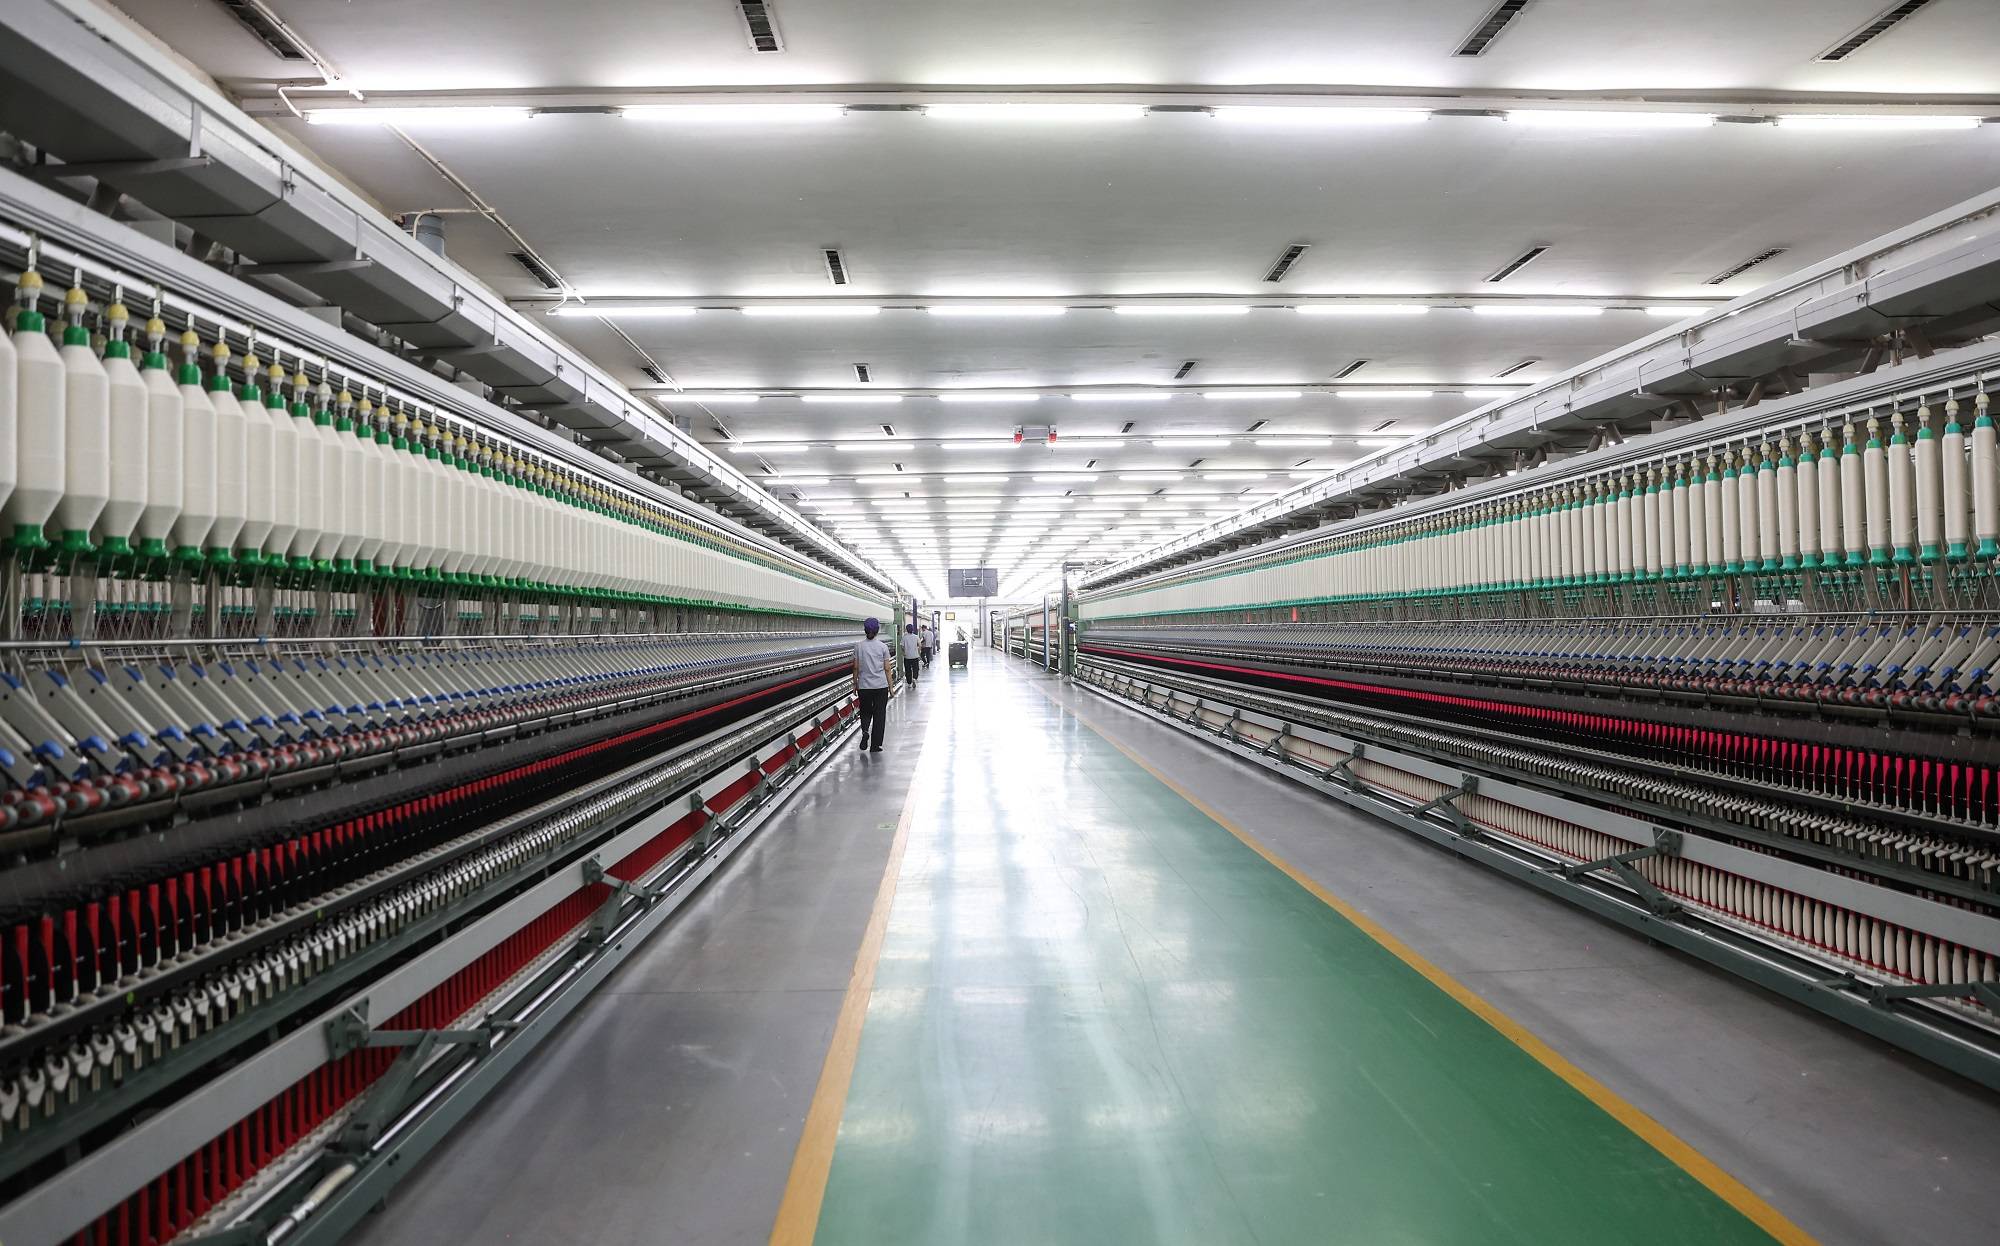 这里生产的纯棉纱线最高可达300支,比头发丝还细,直径不到0